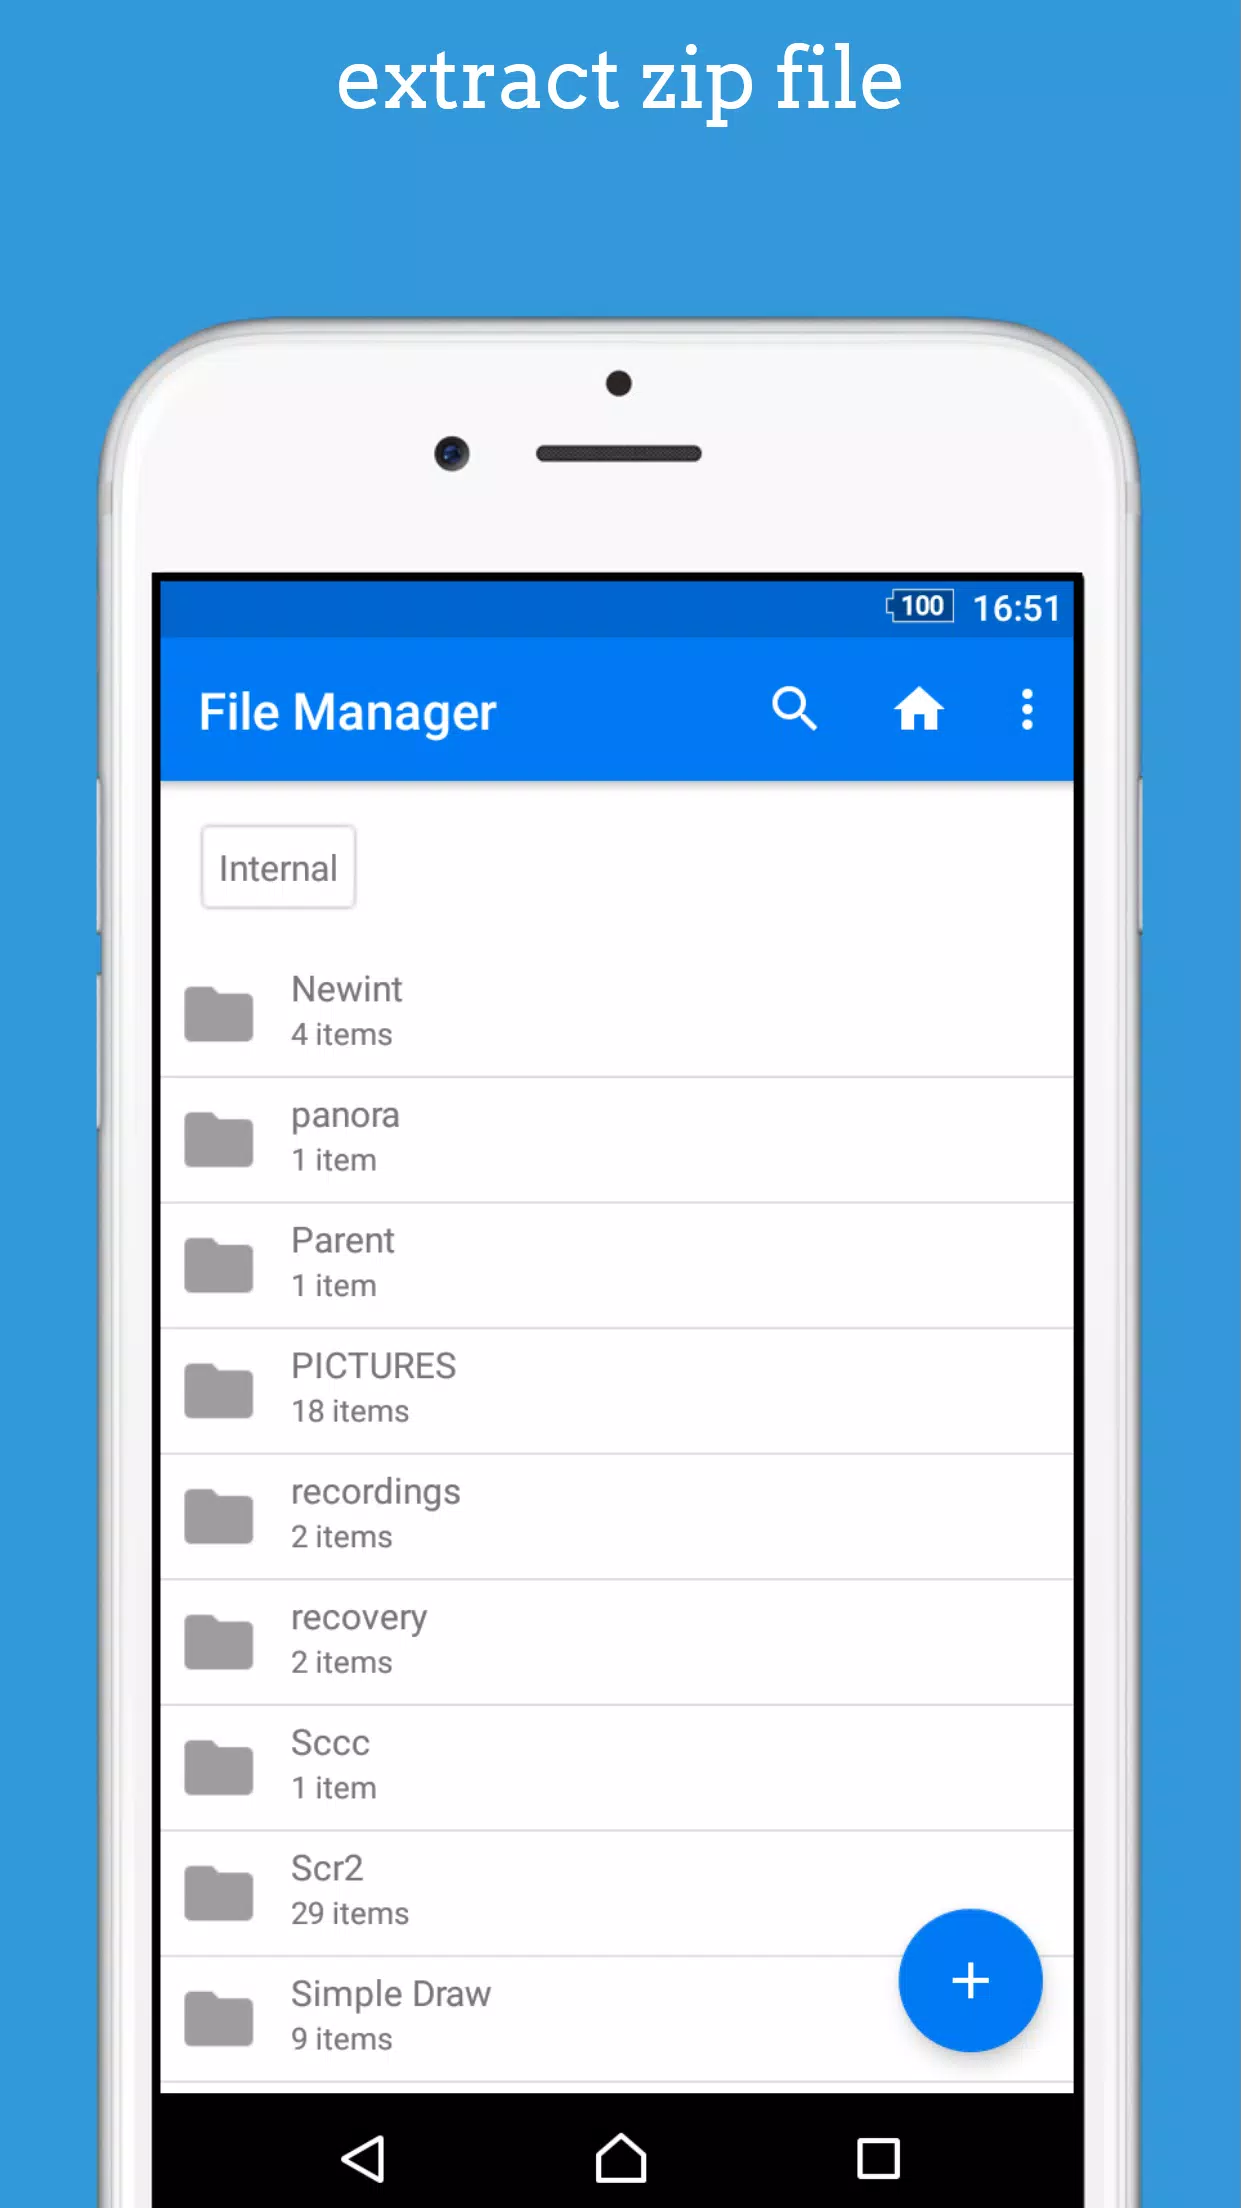 dezipper fichier:unzip android gratuit zip opener APK pour Android  Télécharger